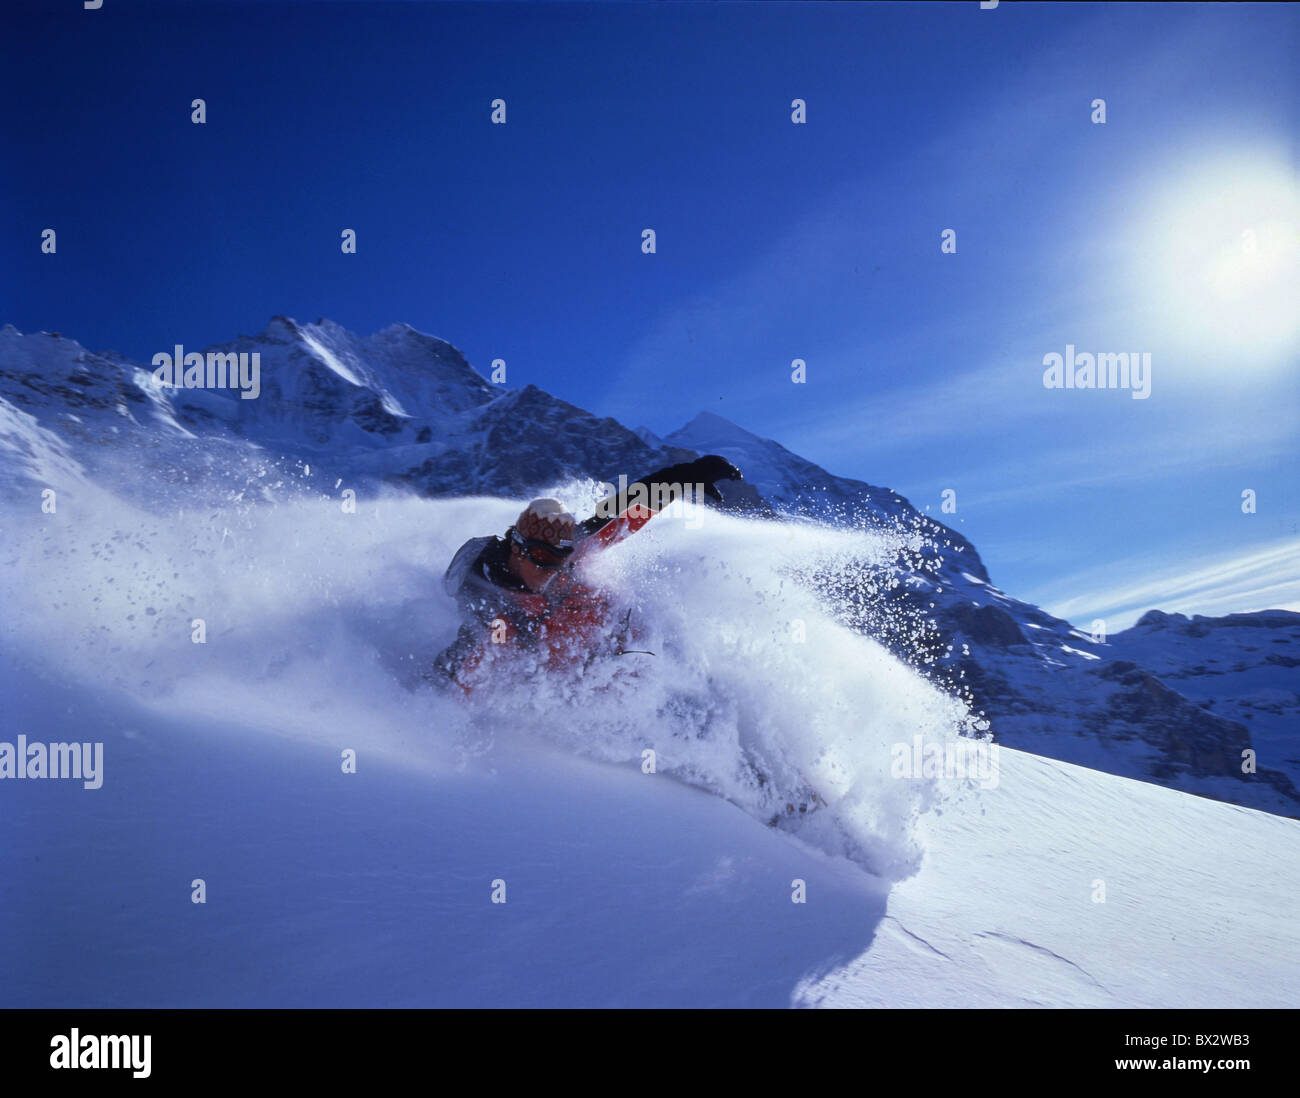 snowboard Snowboarder Kleine Scheidegg snow winter Alps mountains Jungfrau Monch Eiger winter sports sports Stock Photo